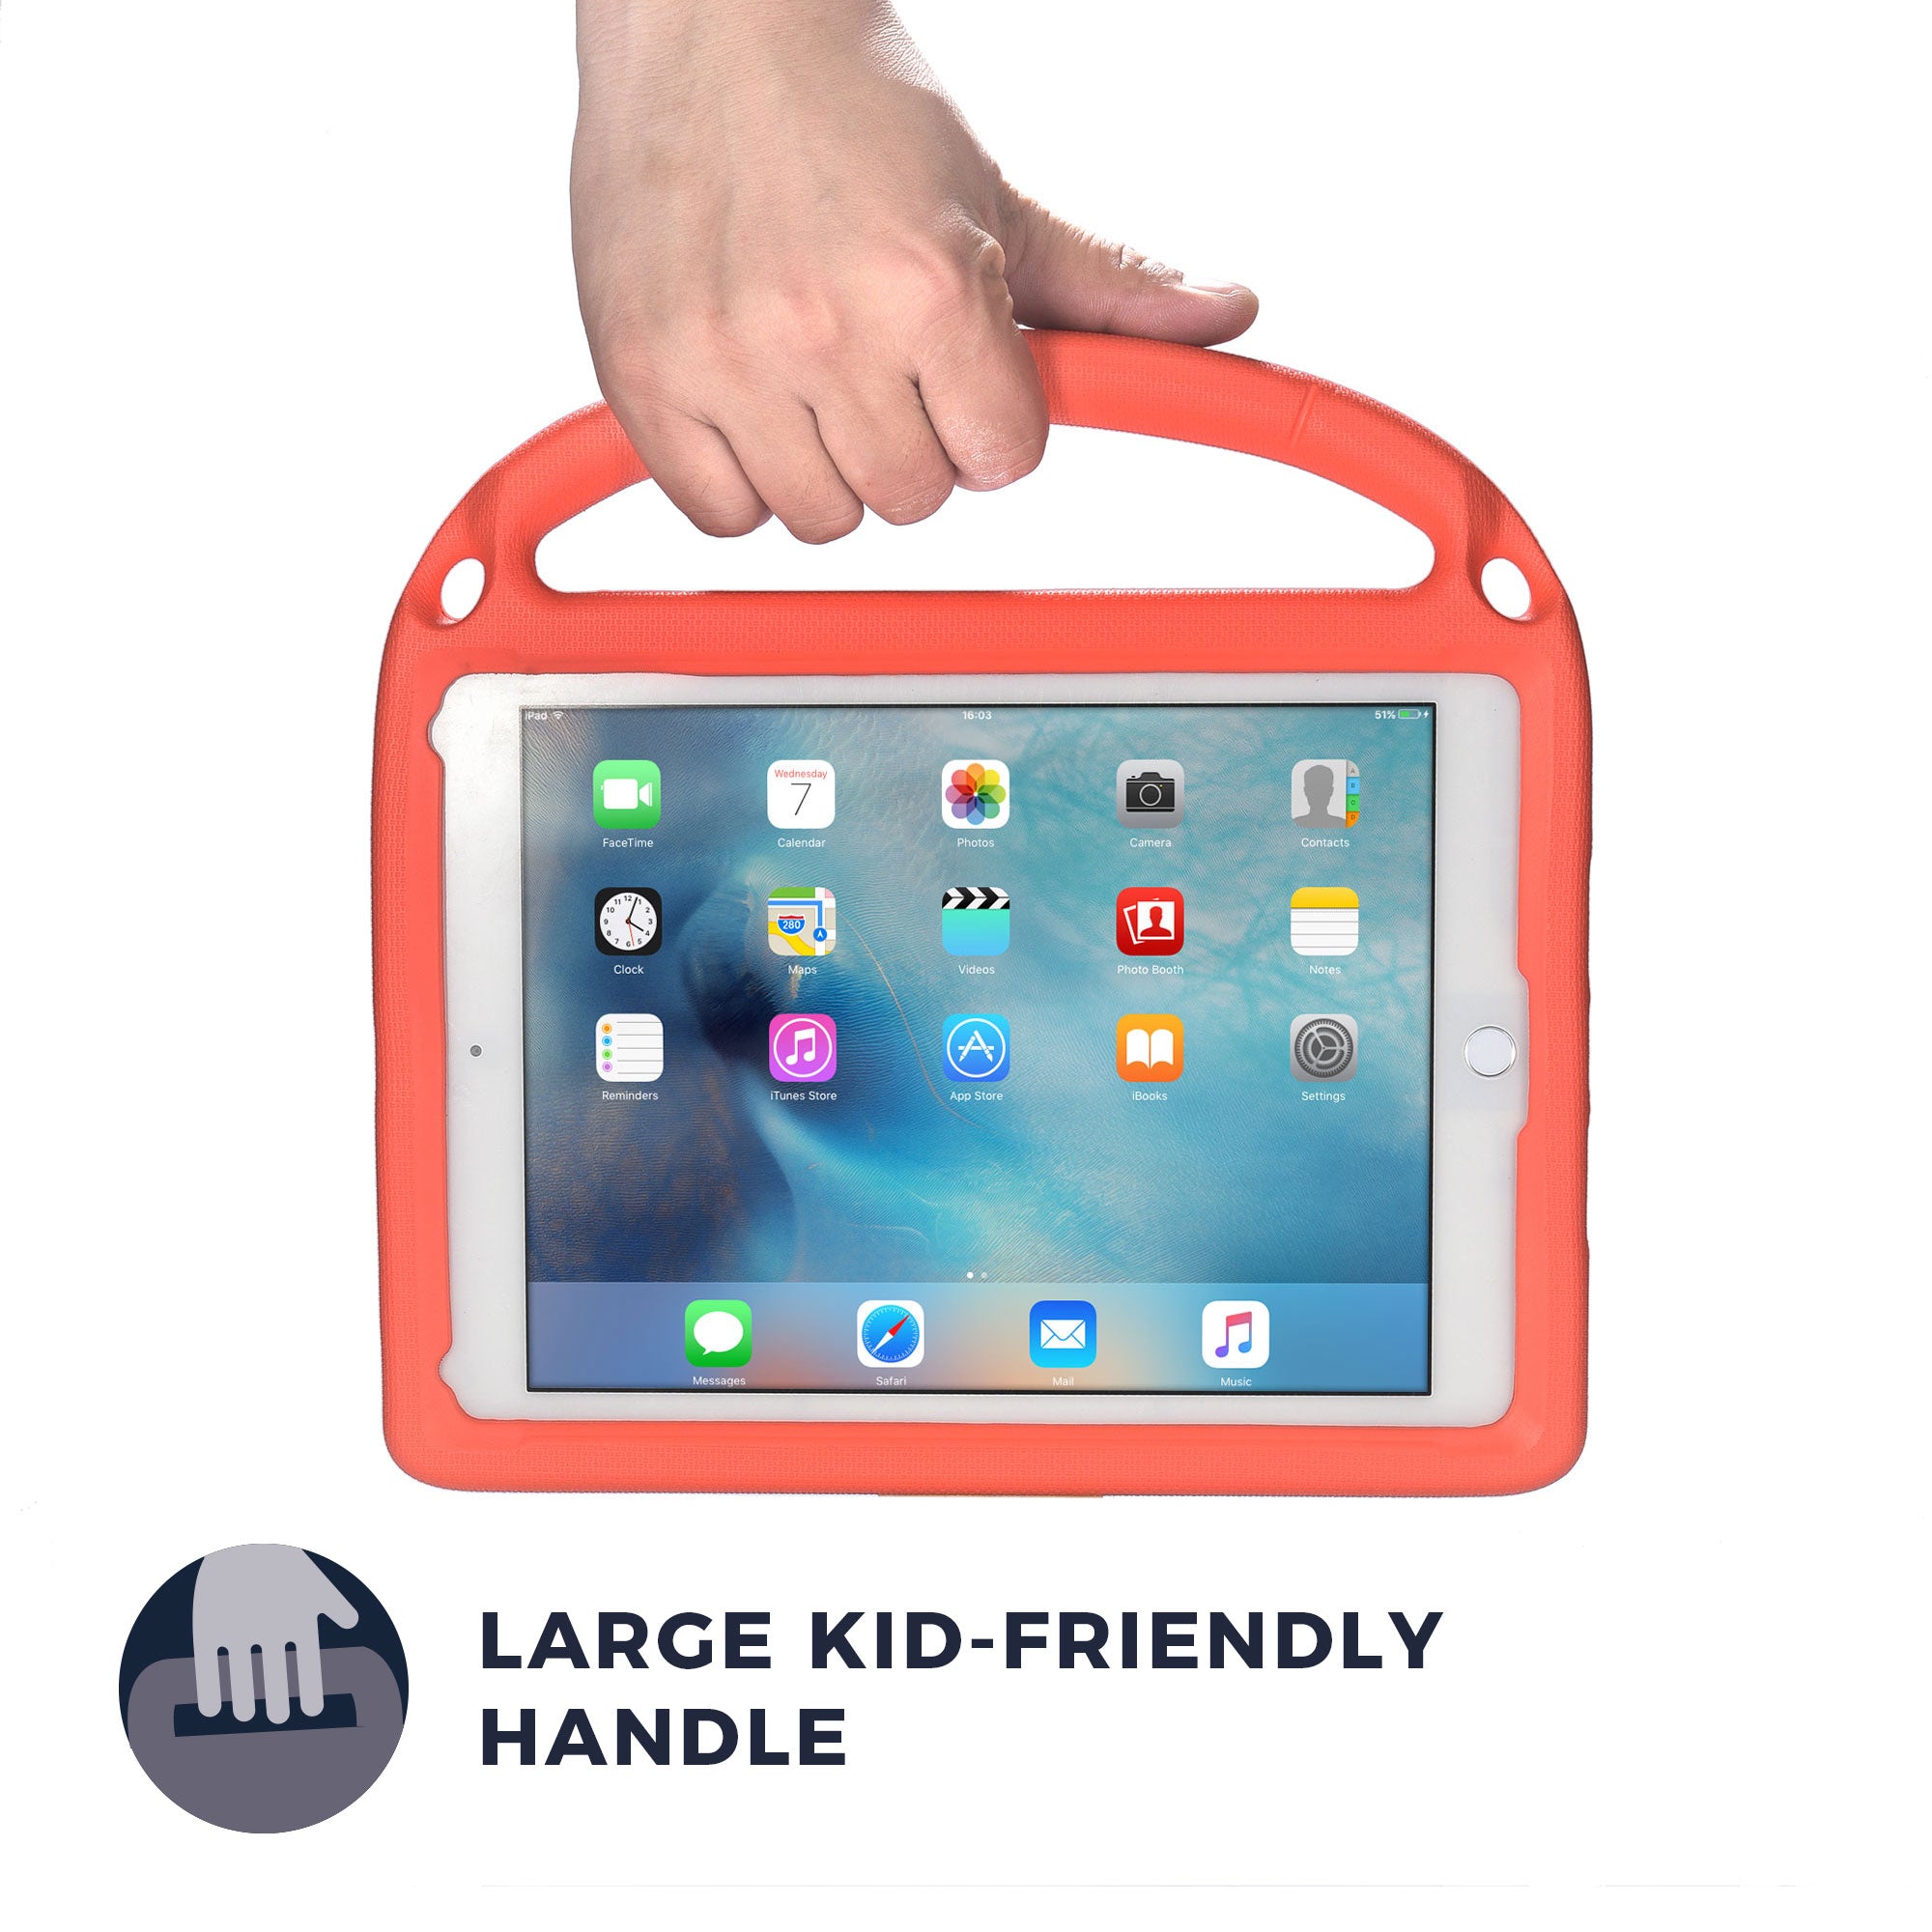 Bam Bino Hero Rugged Case with Shoulder Strap for Apple iPad 6, iPad 5, iPad Pro 9.7, iPad Air 1, iPad Air 2